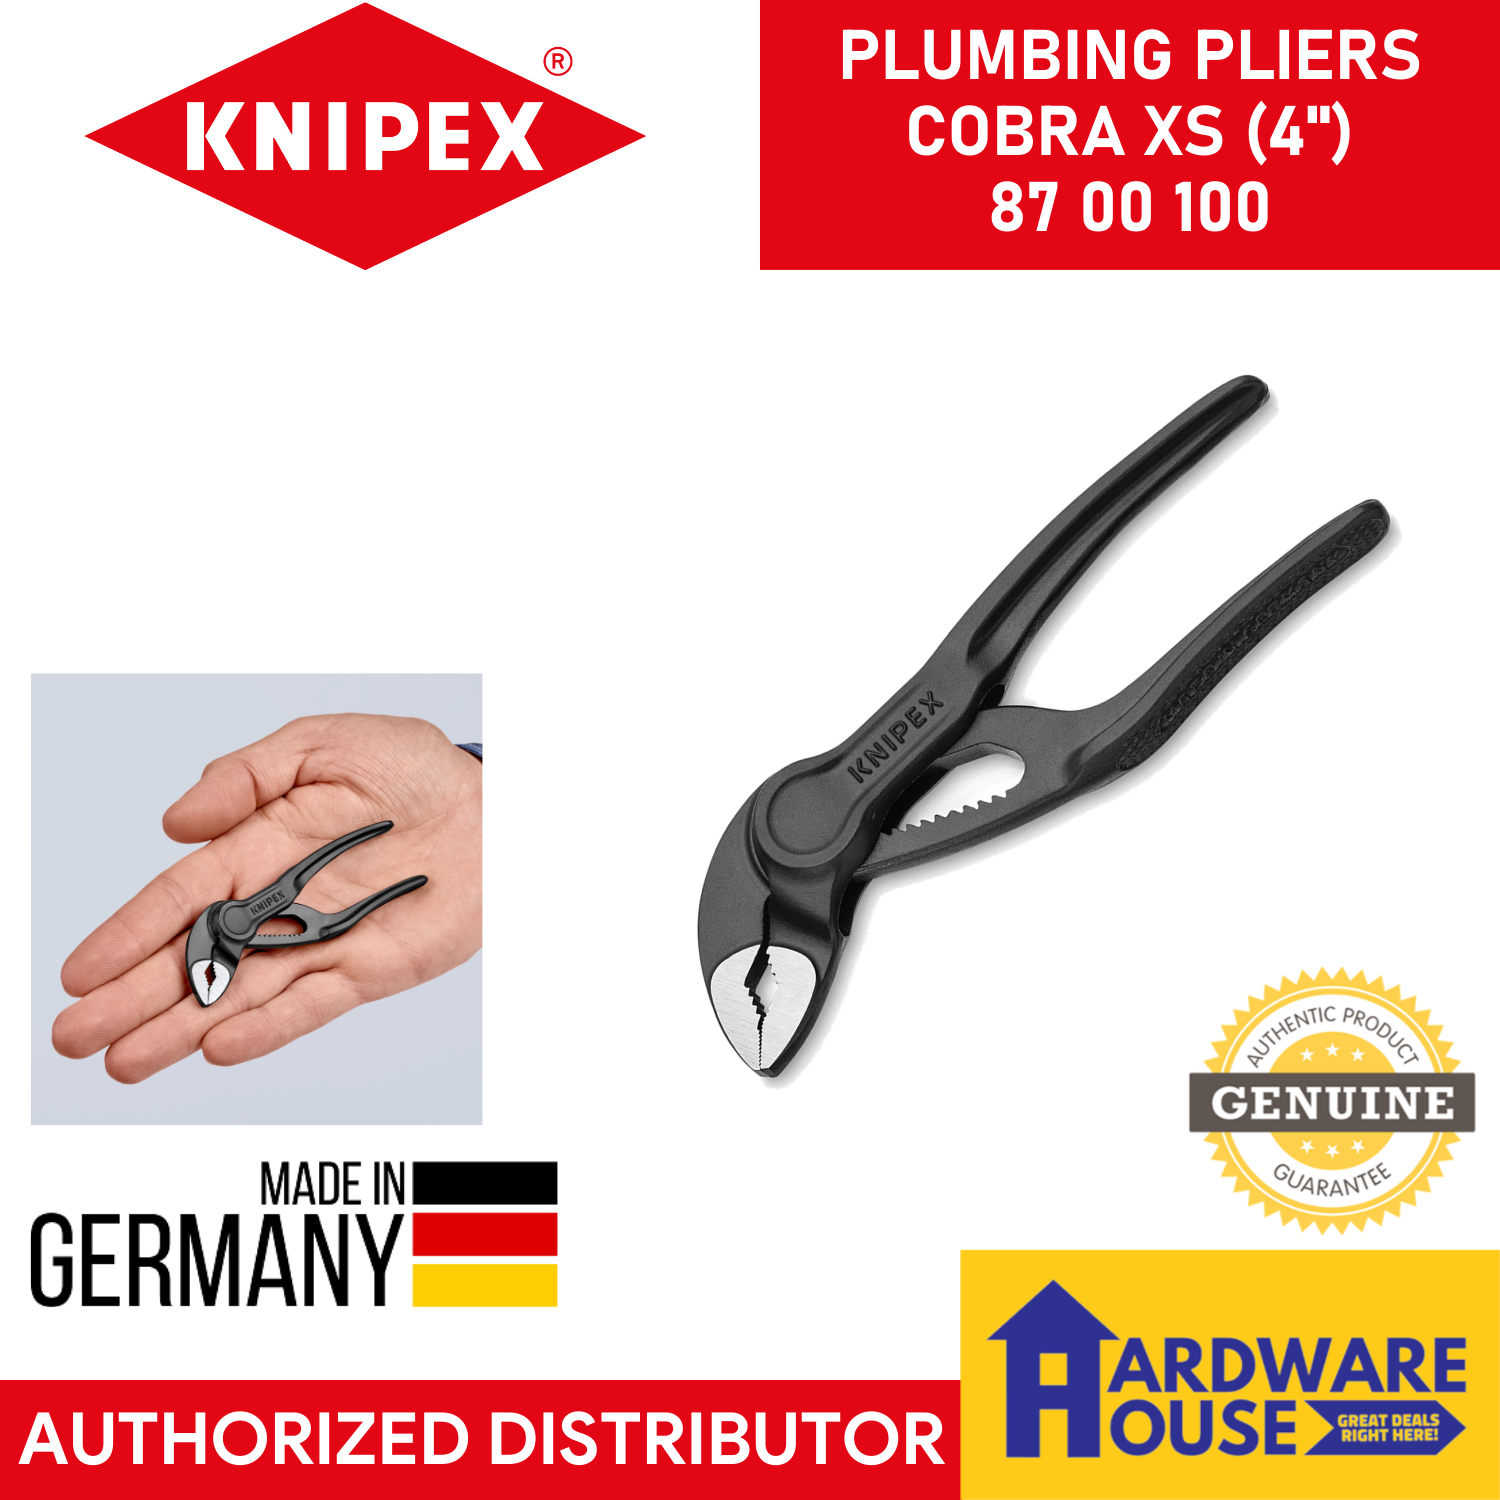 Knipex 87 00 100 Cobra XS Miniature Pliers 100mm